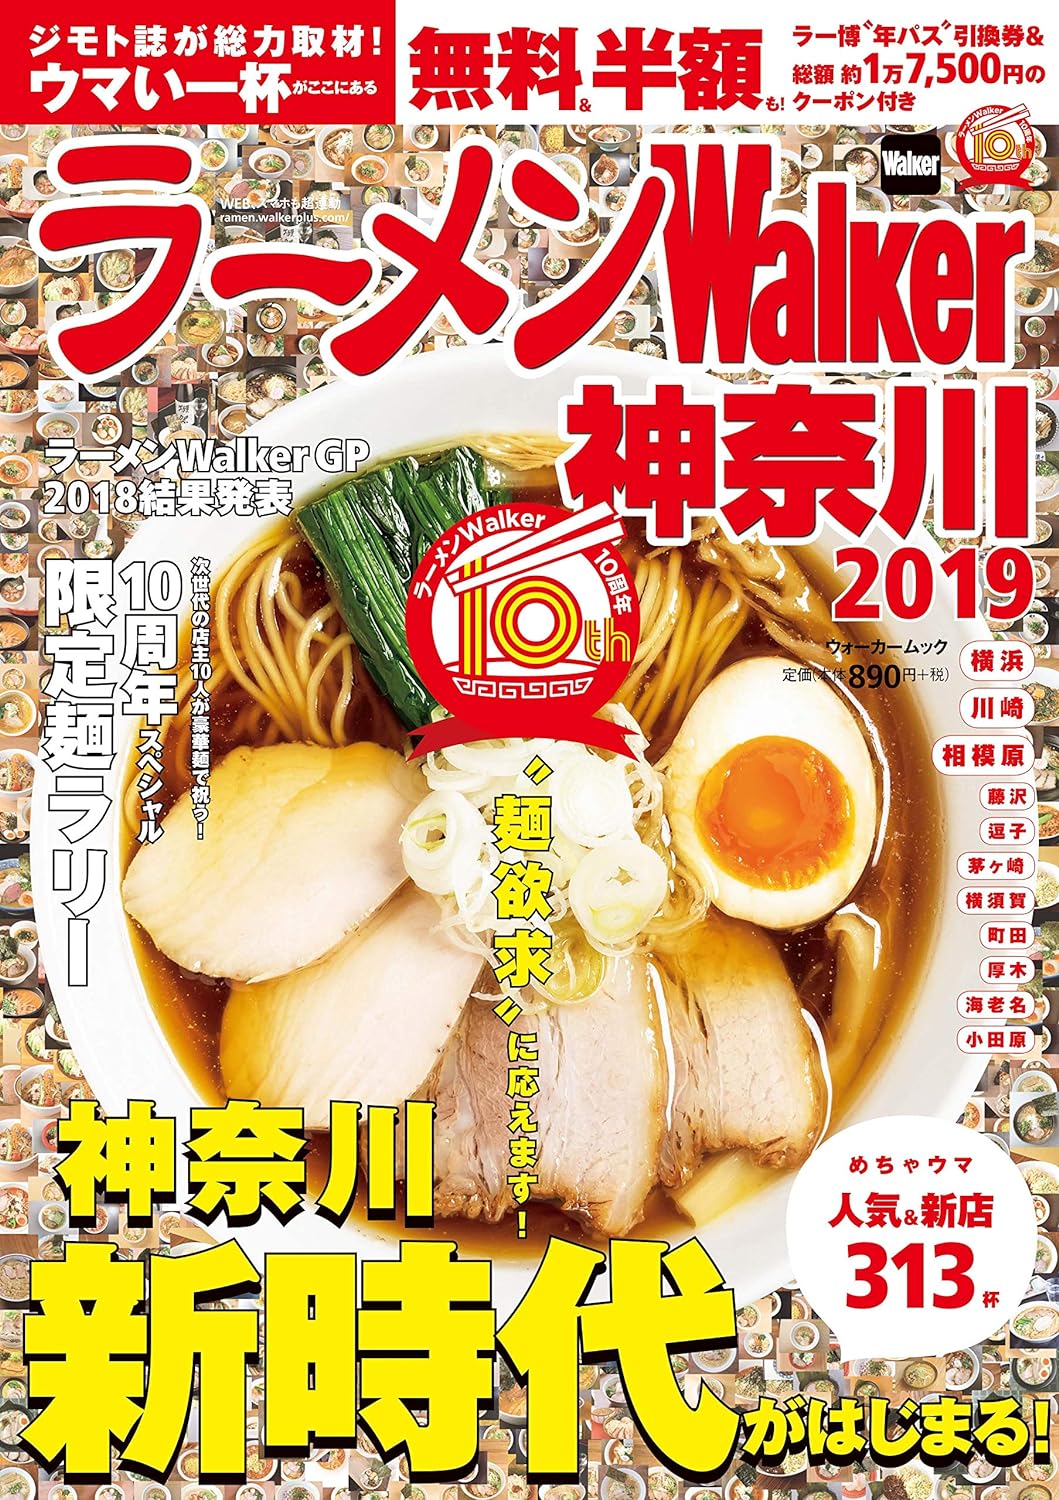 Ramen Walker Kanagawa Edition 2019